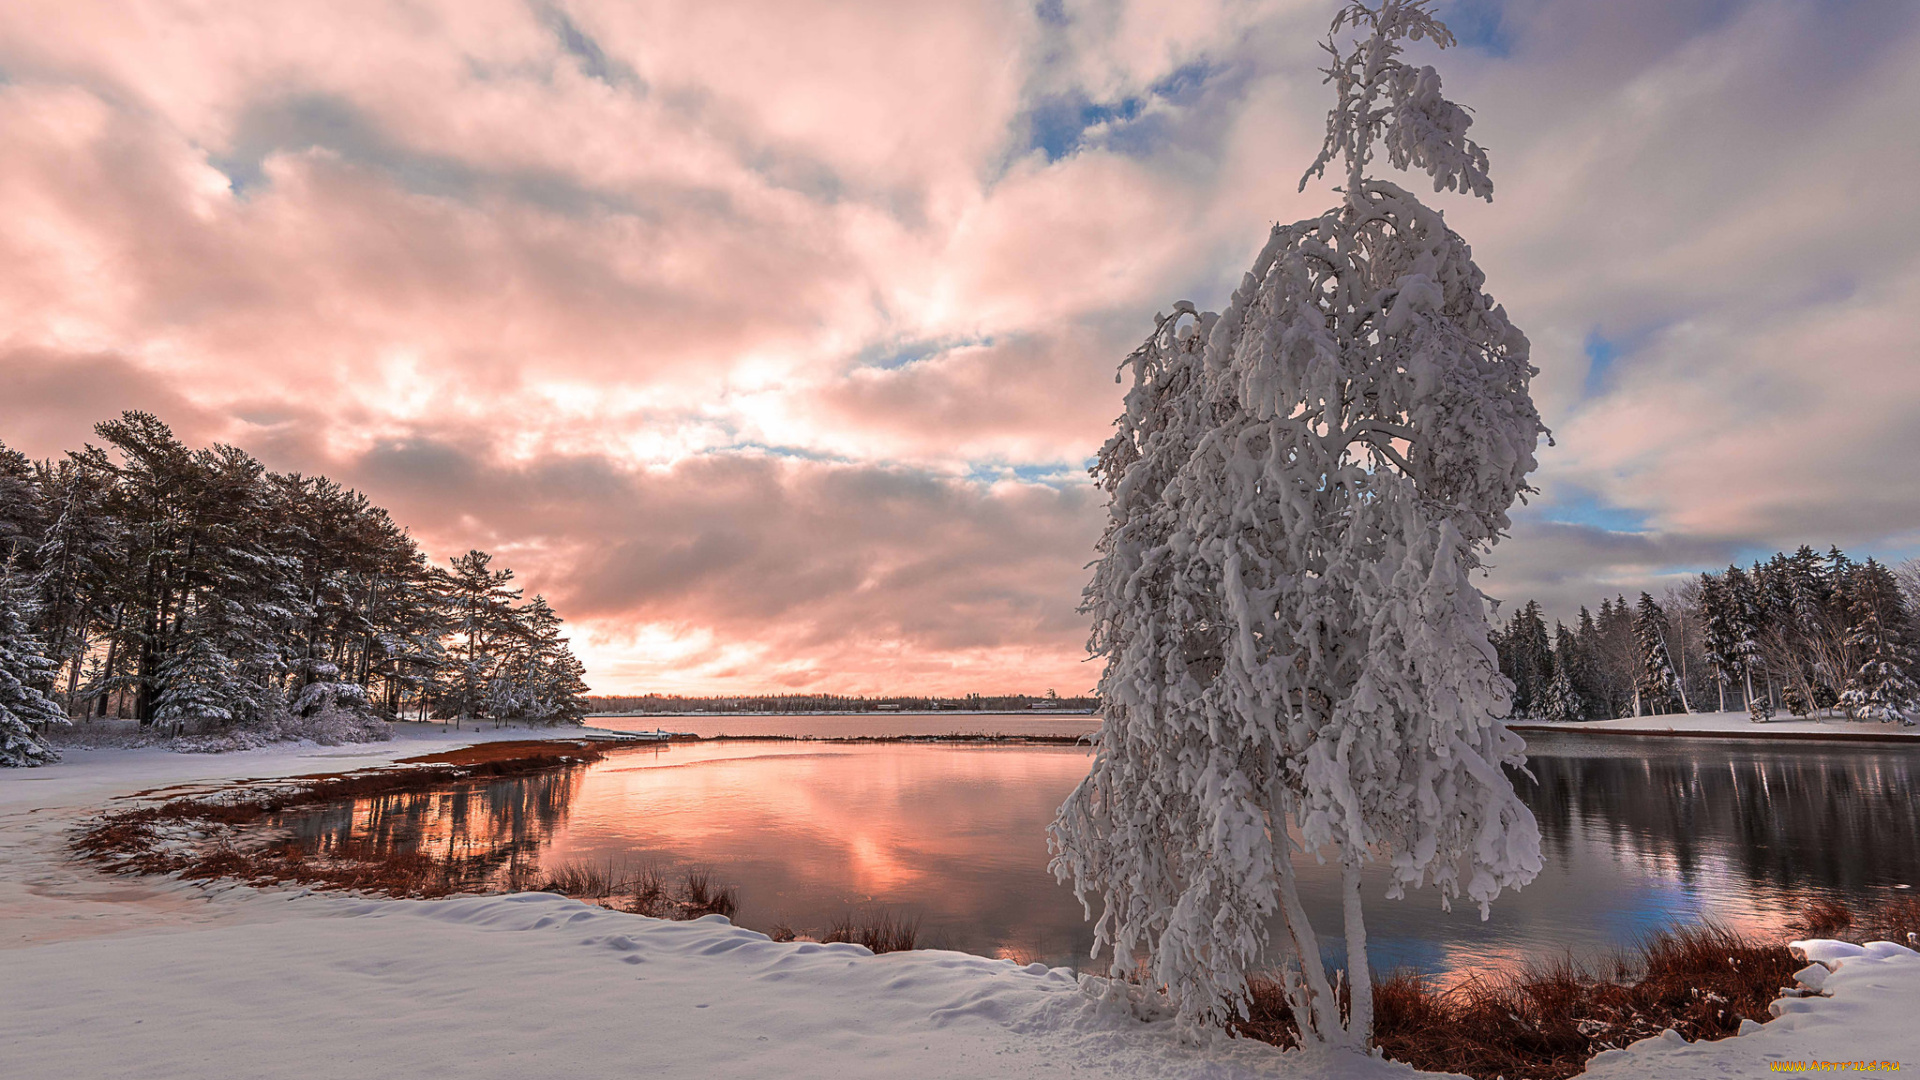 природа, зима, снег, дерево, snow, озеро, tree, lake, зимний, пейзаж, winter, landscape